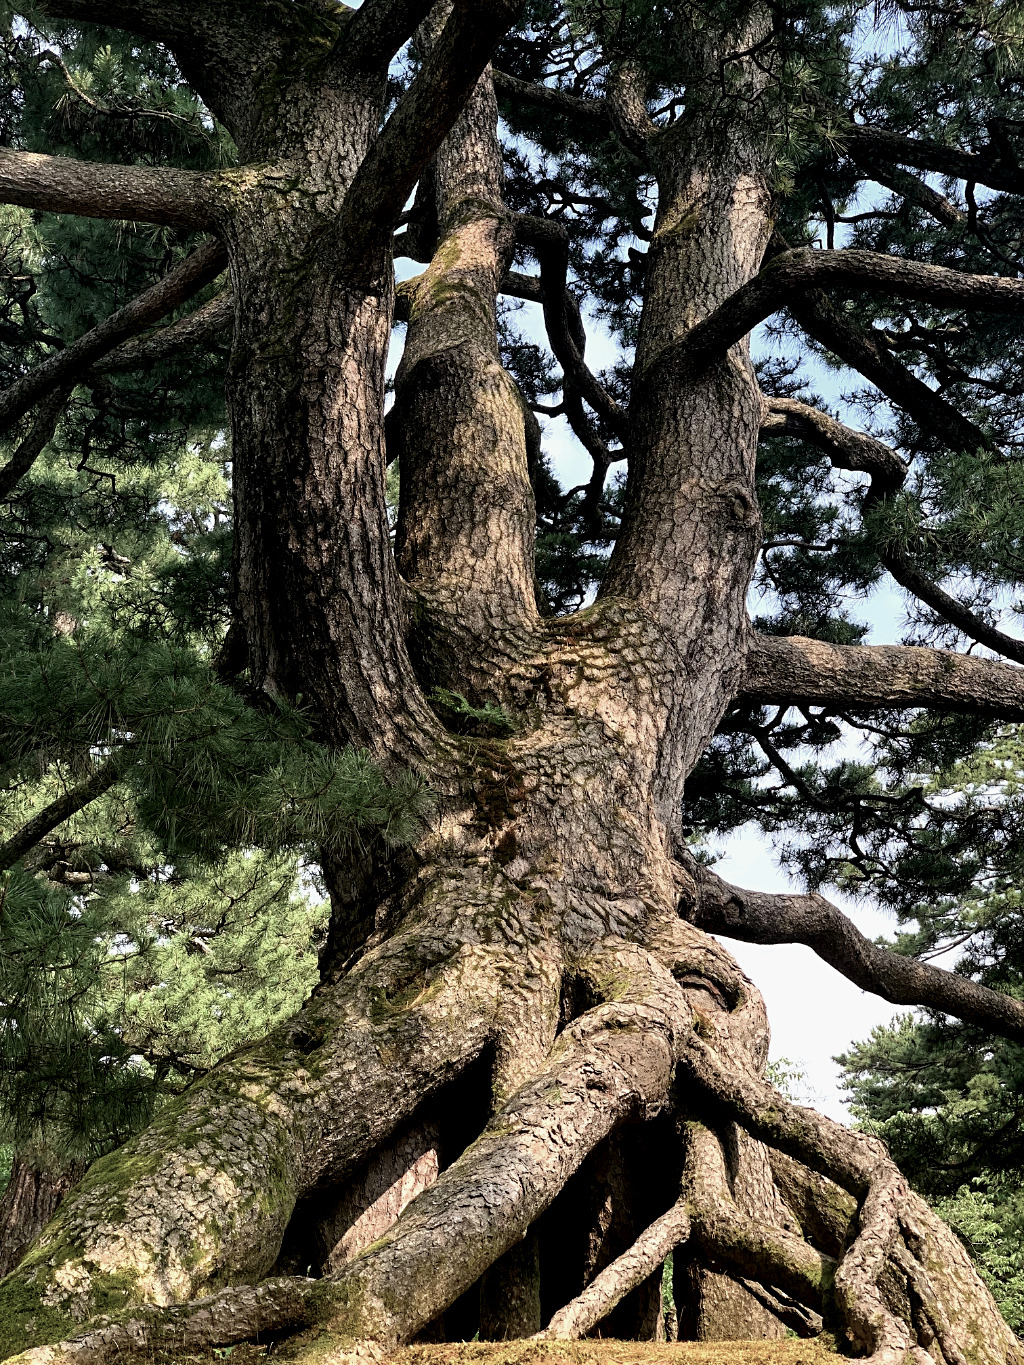 Neagarinomatsu Pine in Kenrokuen, Kanazawa